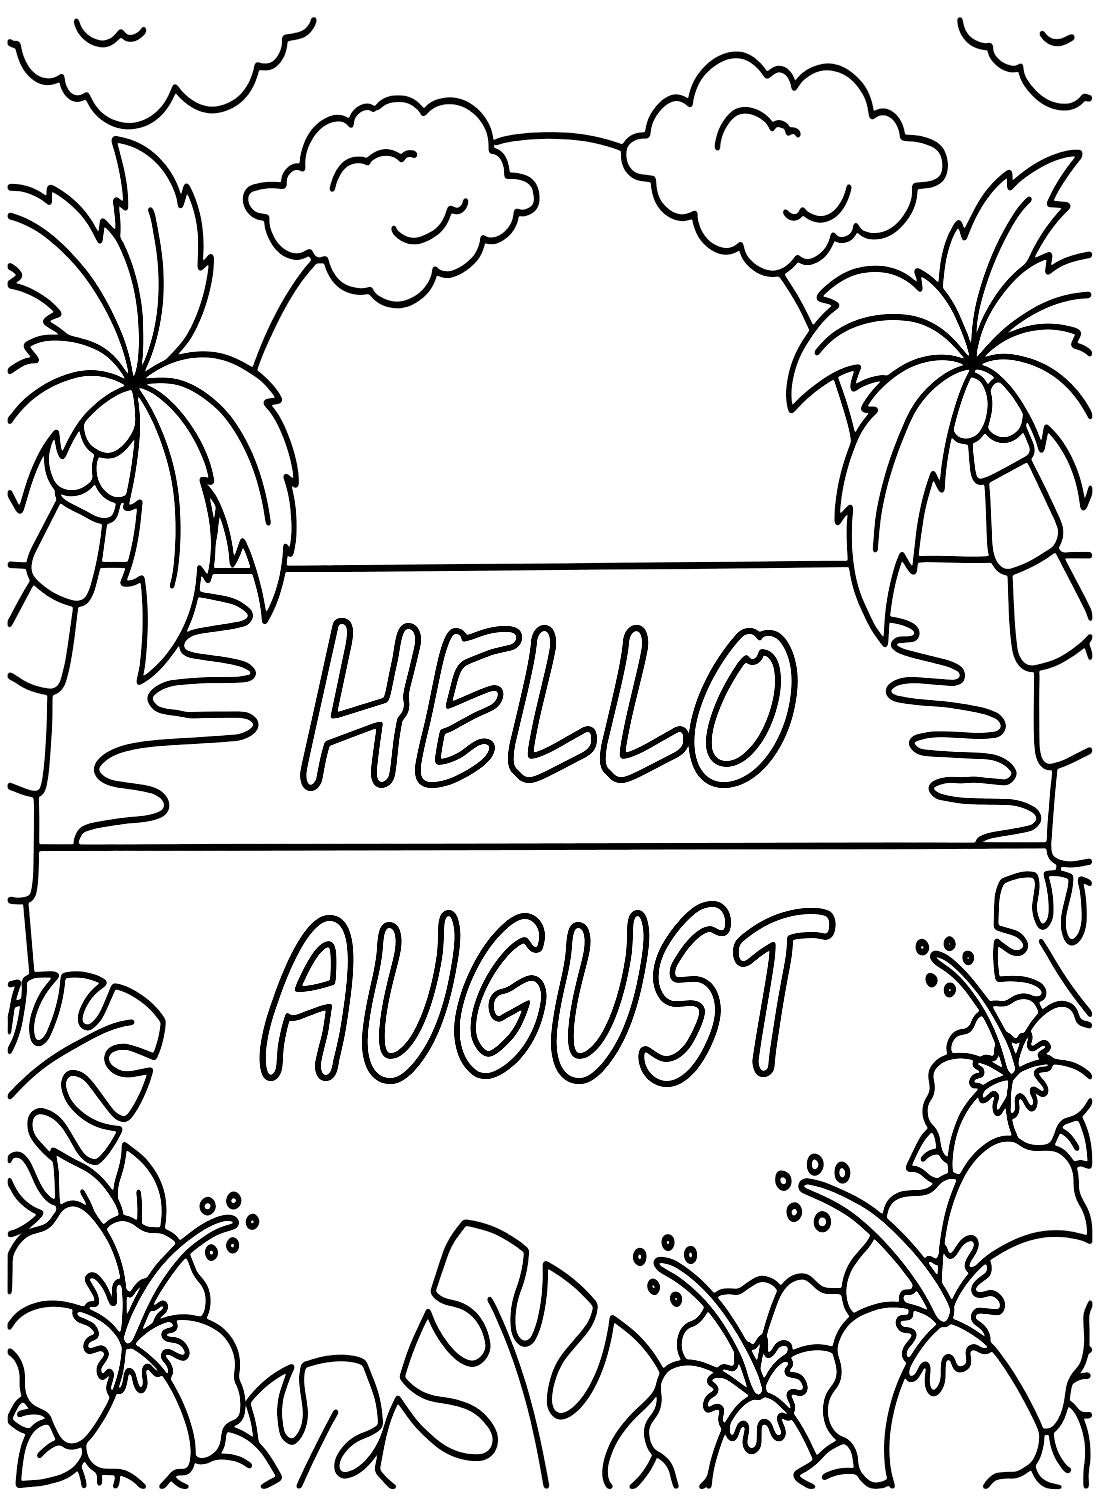 Hallo augustus vanaf augustus